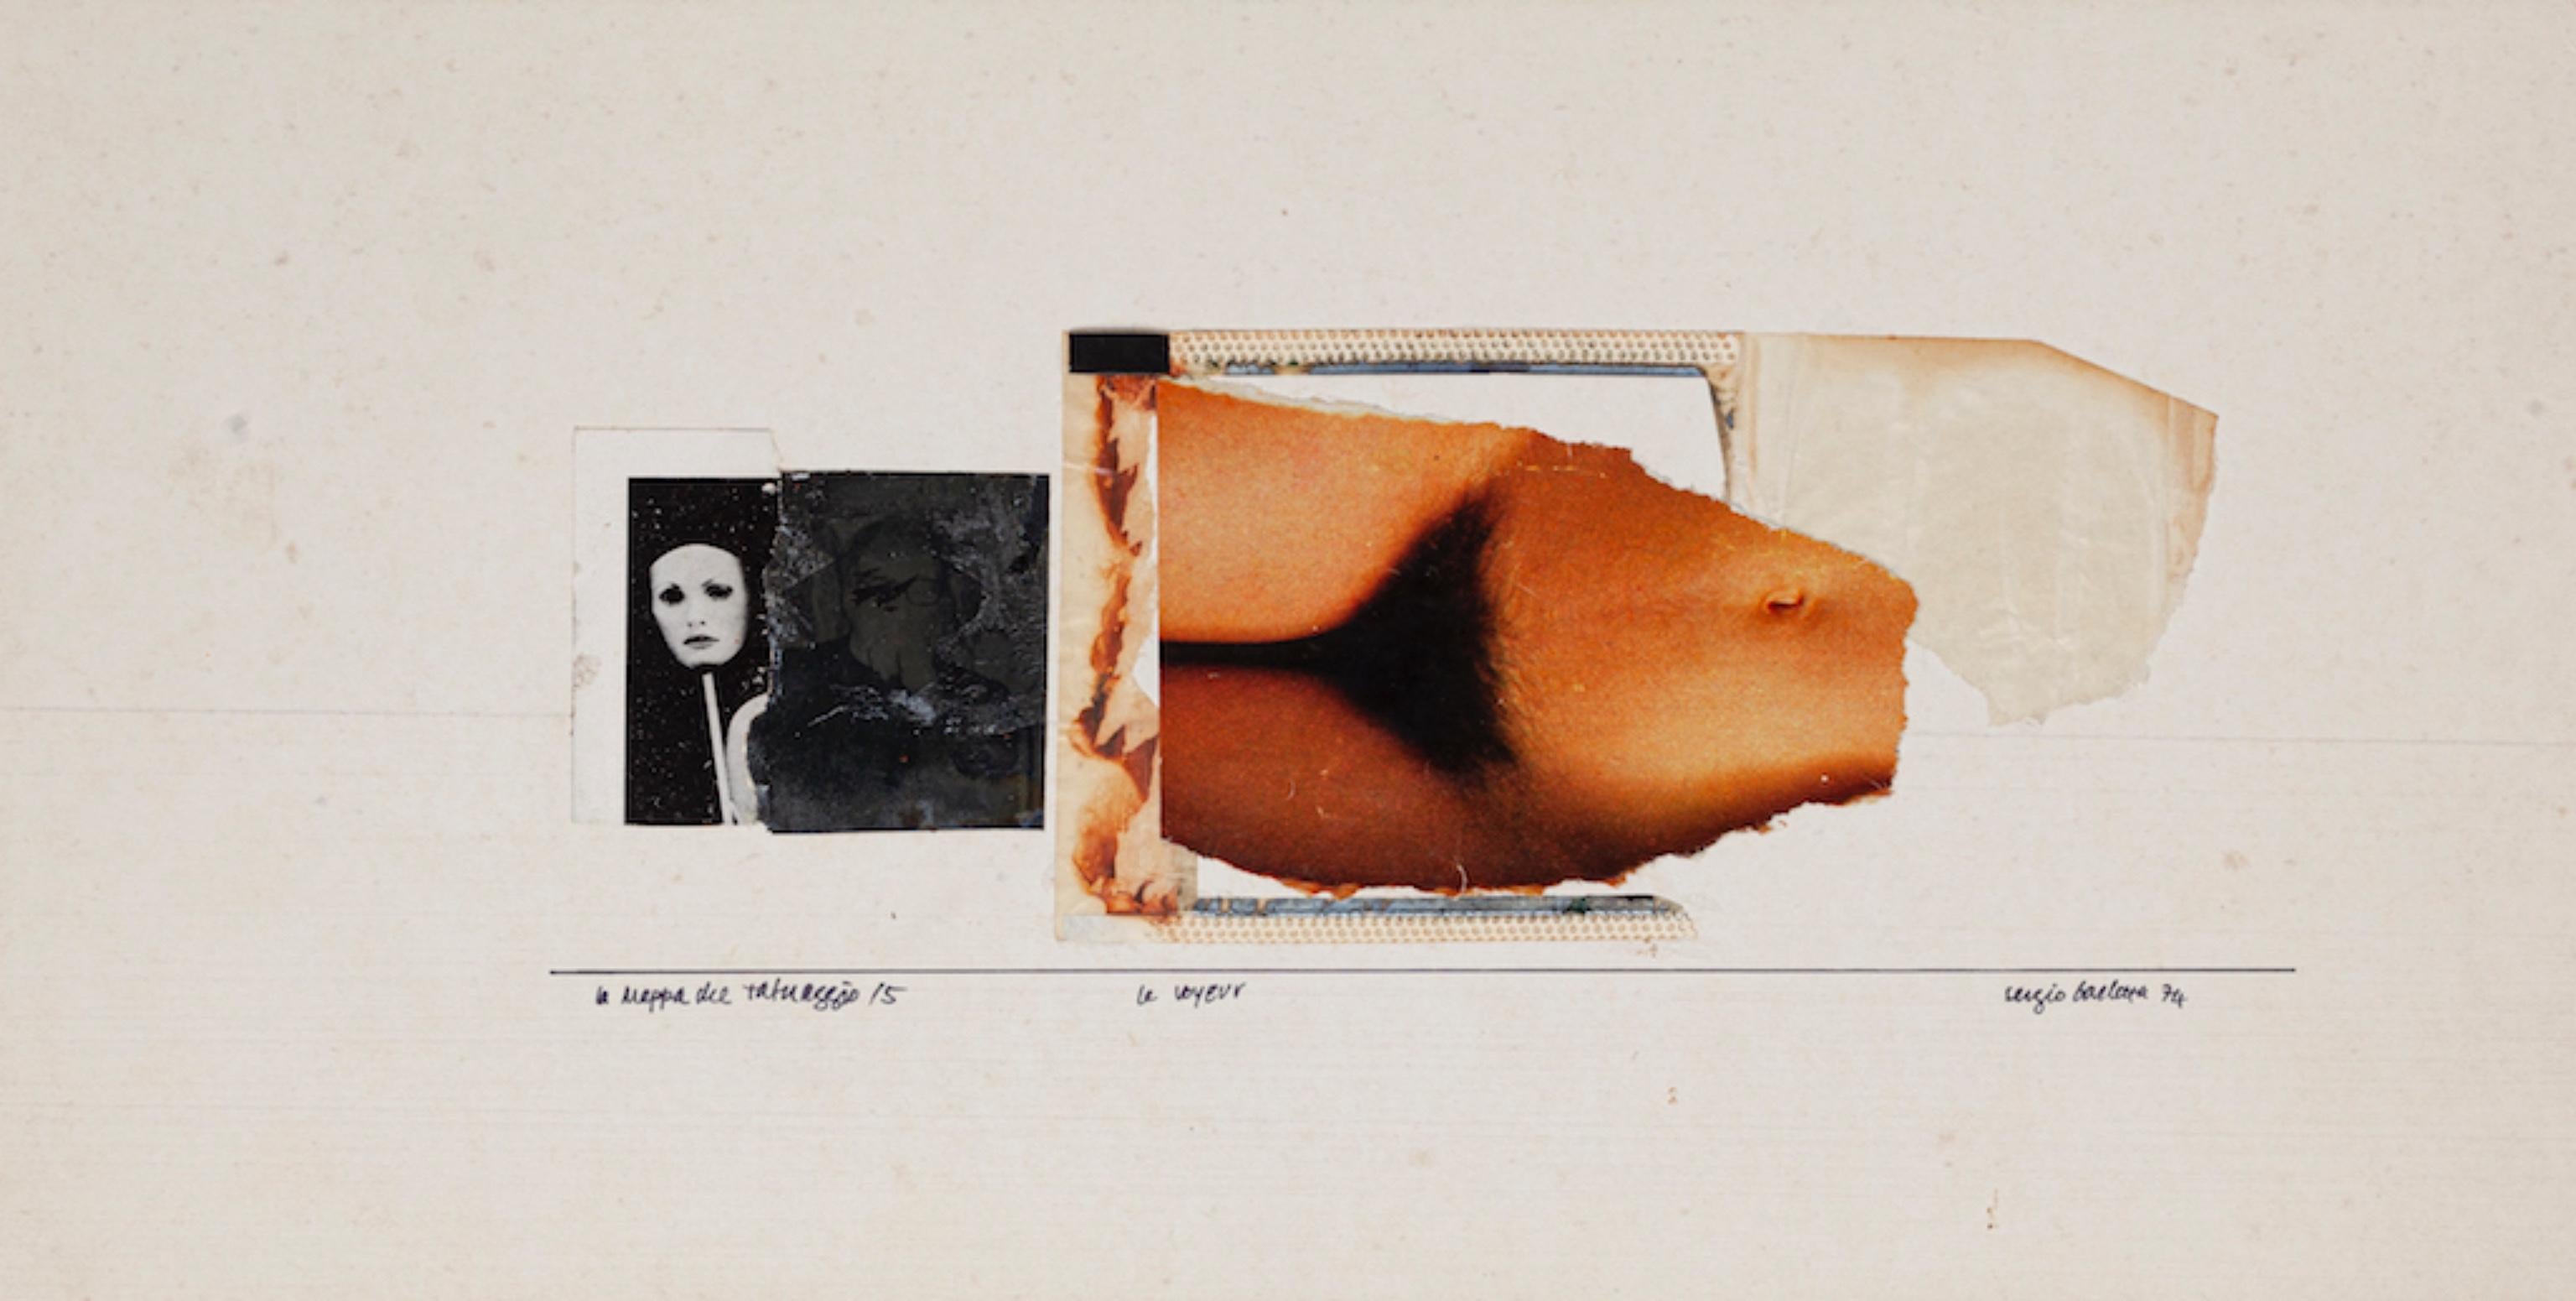 Voyeur - Original Collage by Sergio Barletta - 1974